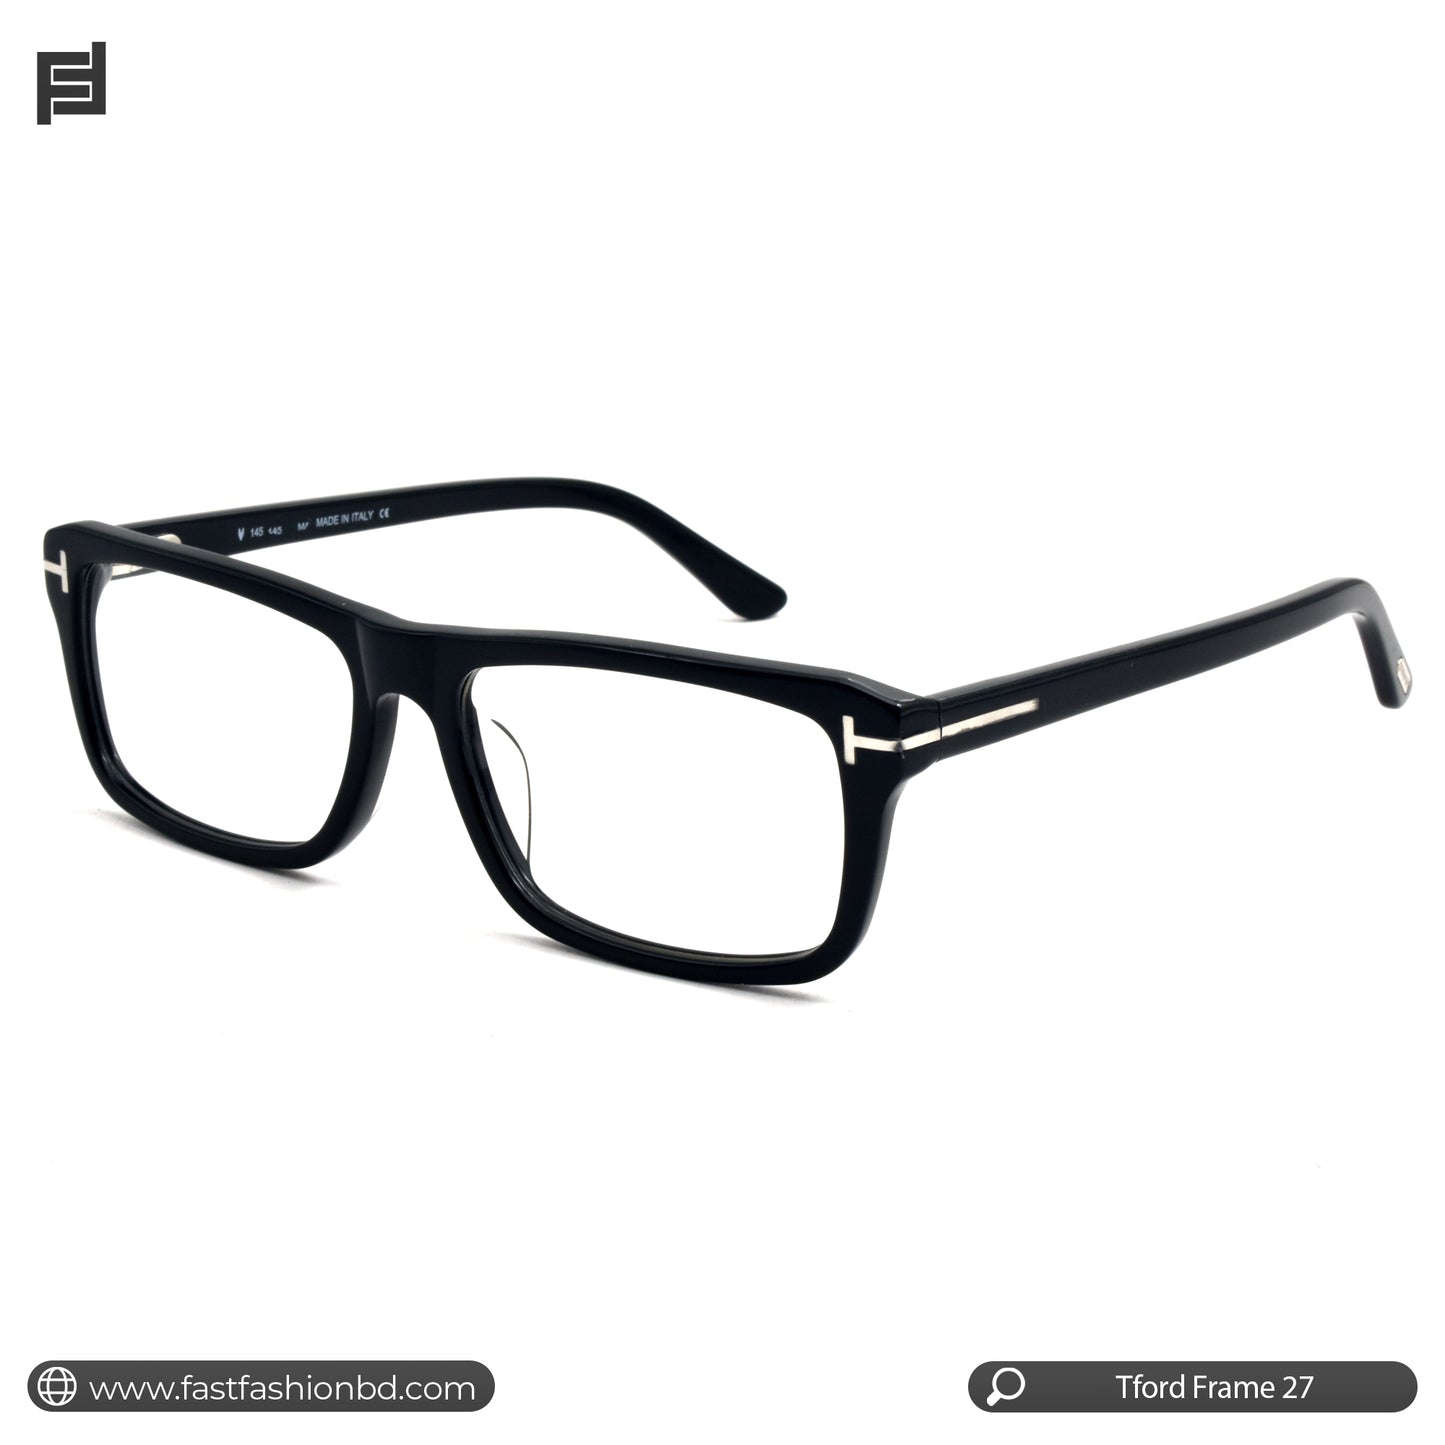 Trendy Stylish Optic Frame | TFord Frame 27 | Premium Quality Eye Glass